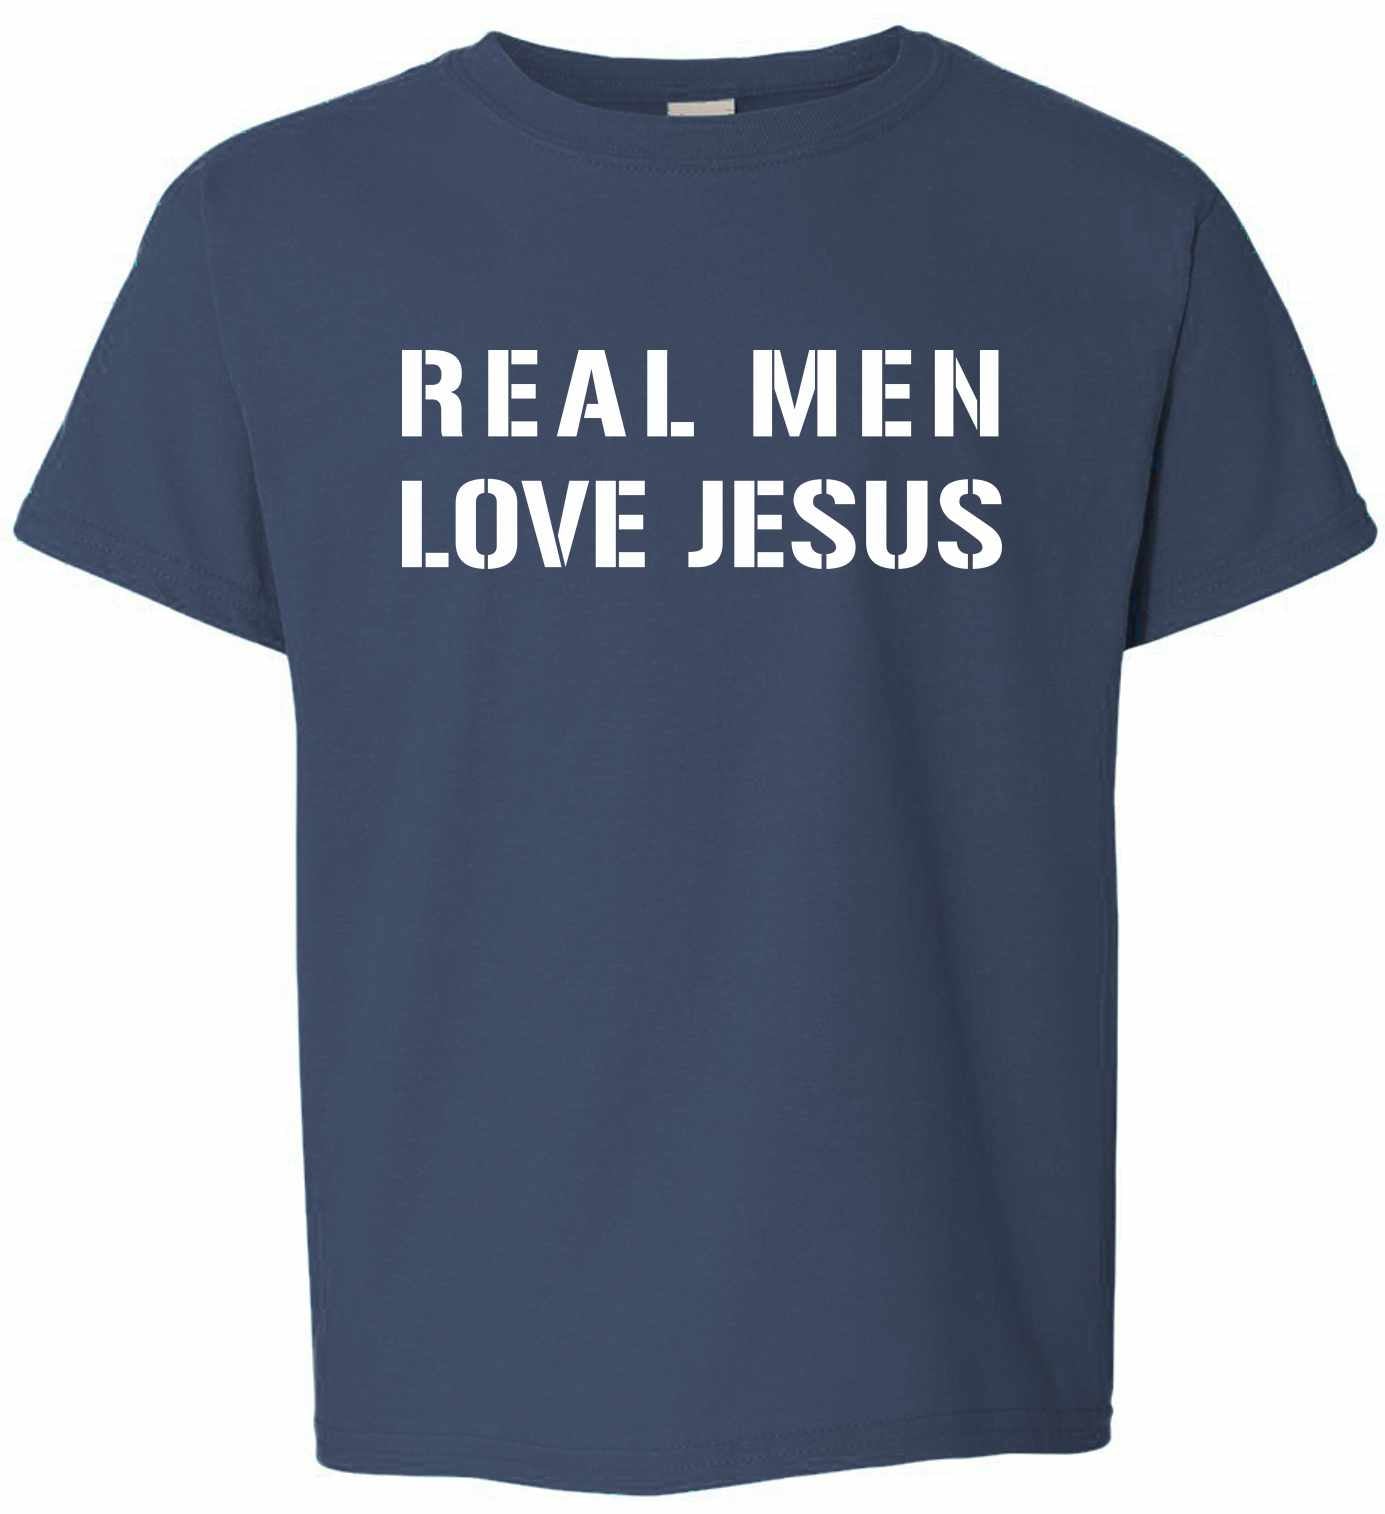 REAL MEN LOVE JESUS on Kids T-Shirt (#393-201)